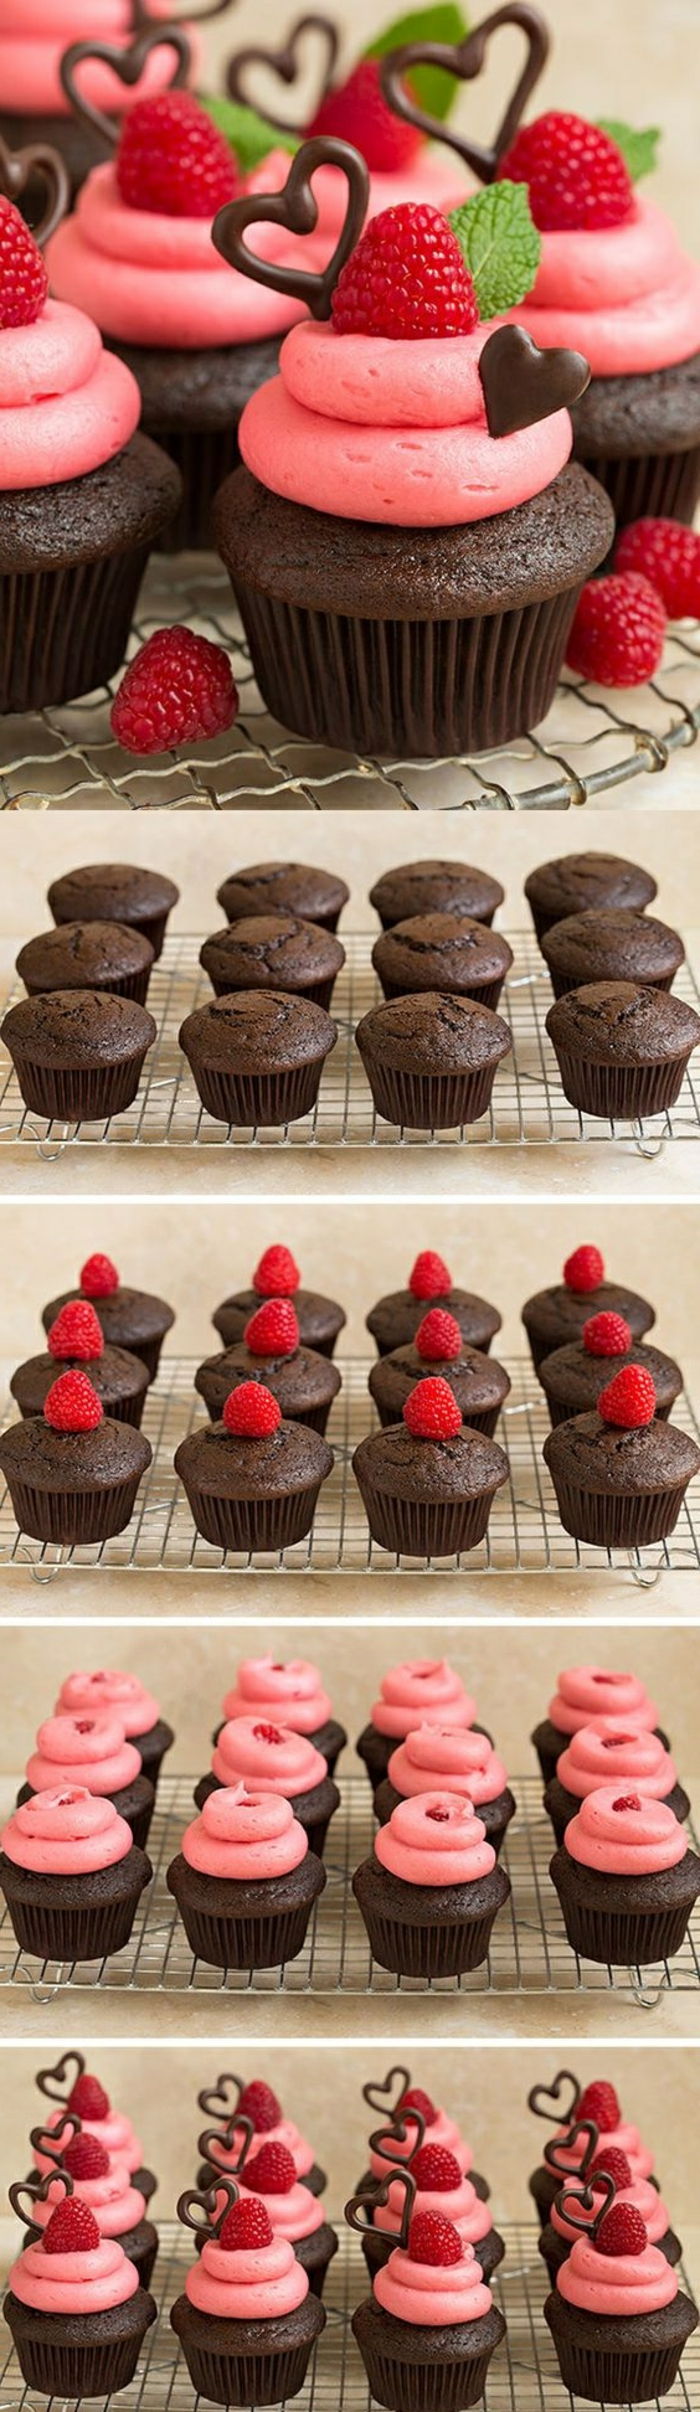 Cupcakes dekorert med jordbær, peppermynte og sjokoladehjerter